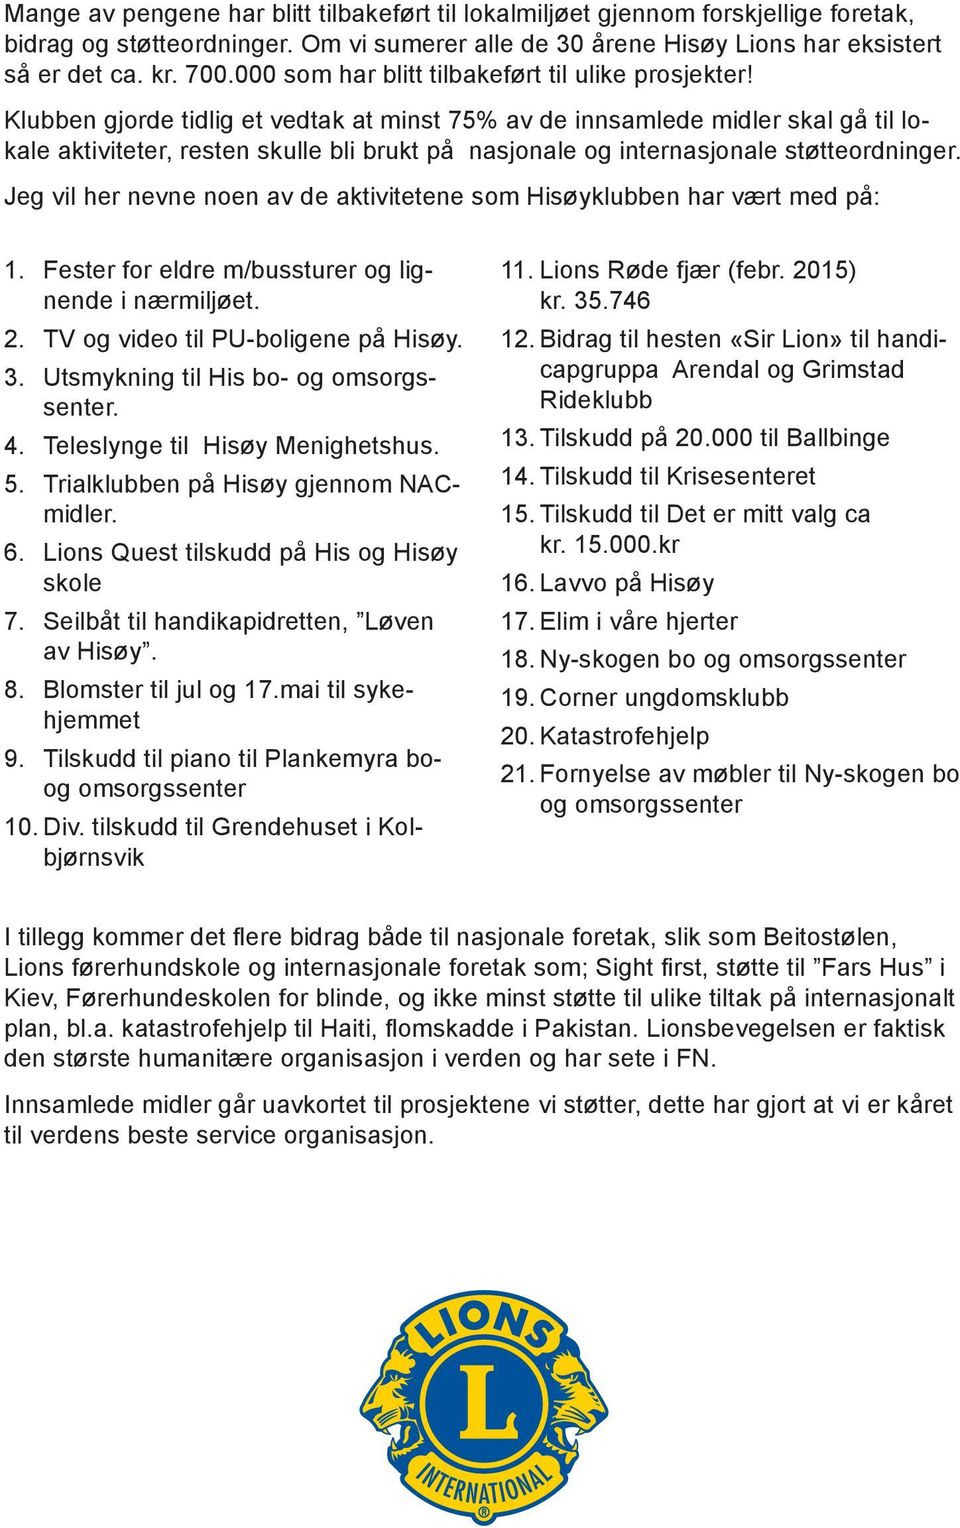 Hisøy Lions Club - PDF Gratis nedlasting